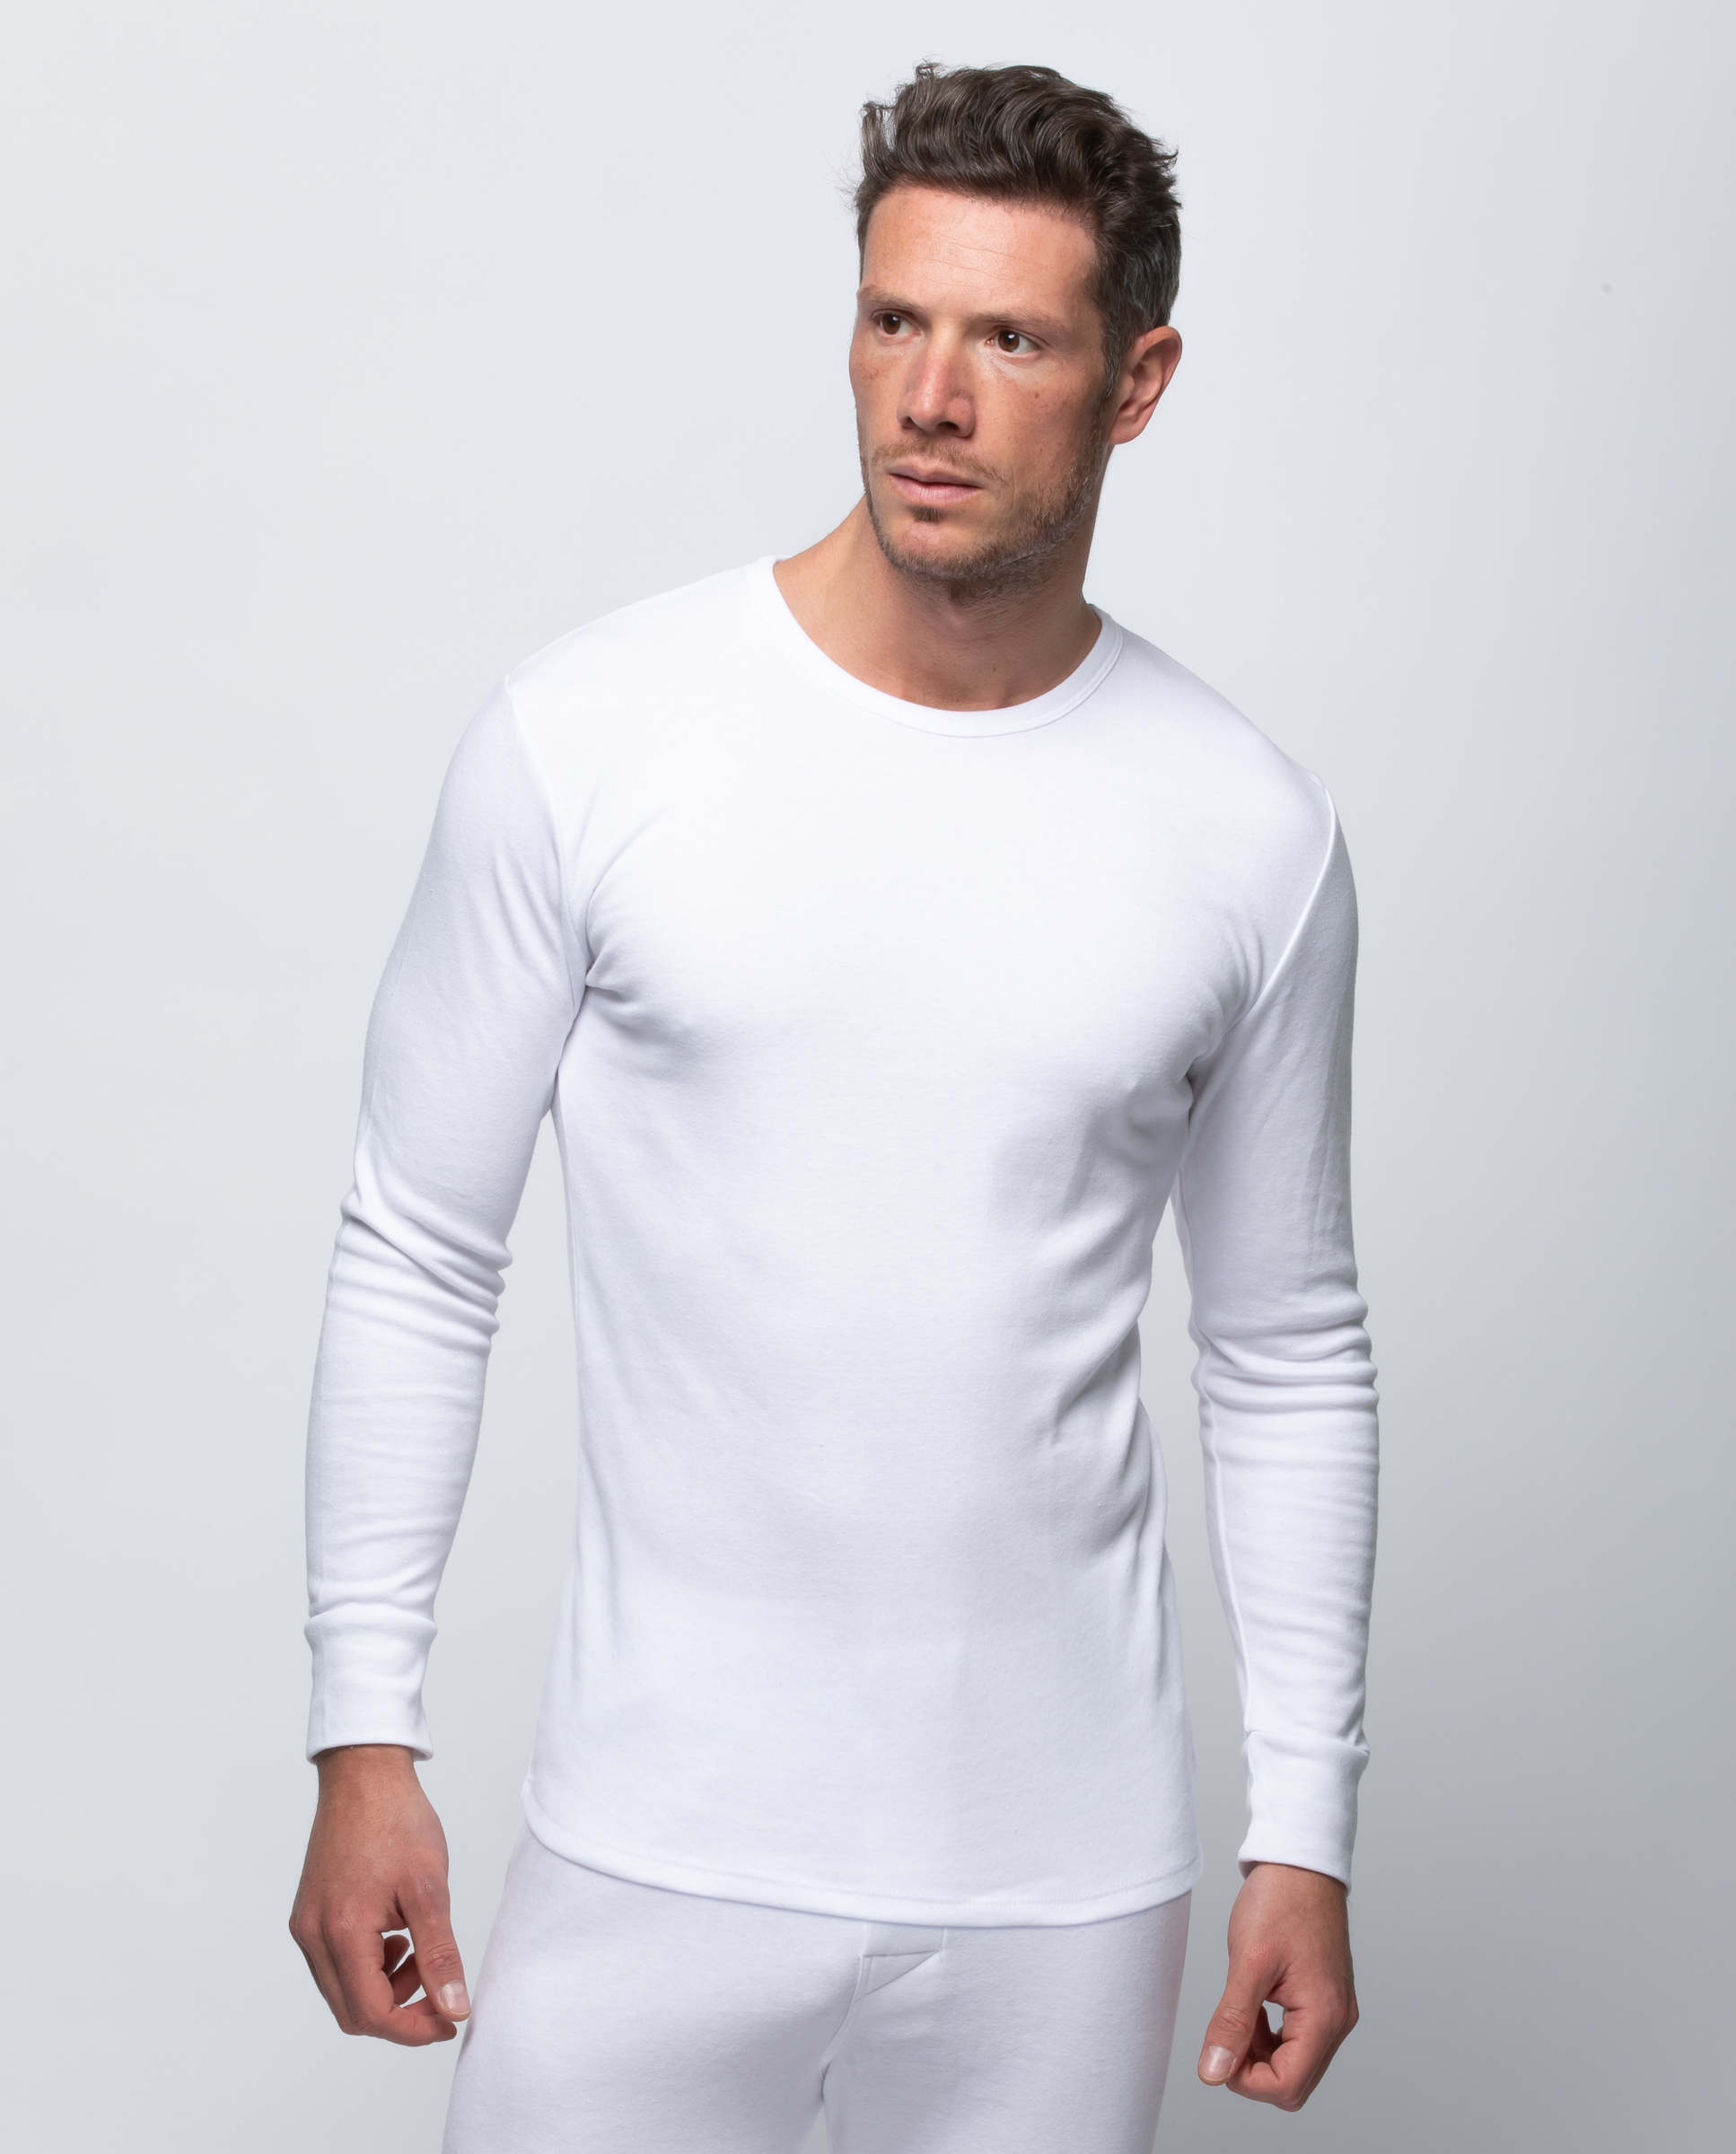 Camiseta interior 100% algodón de invierno